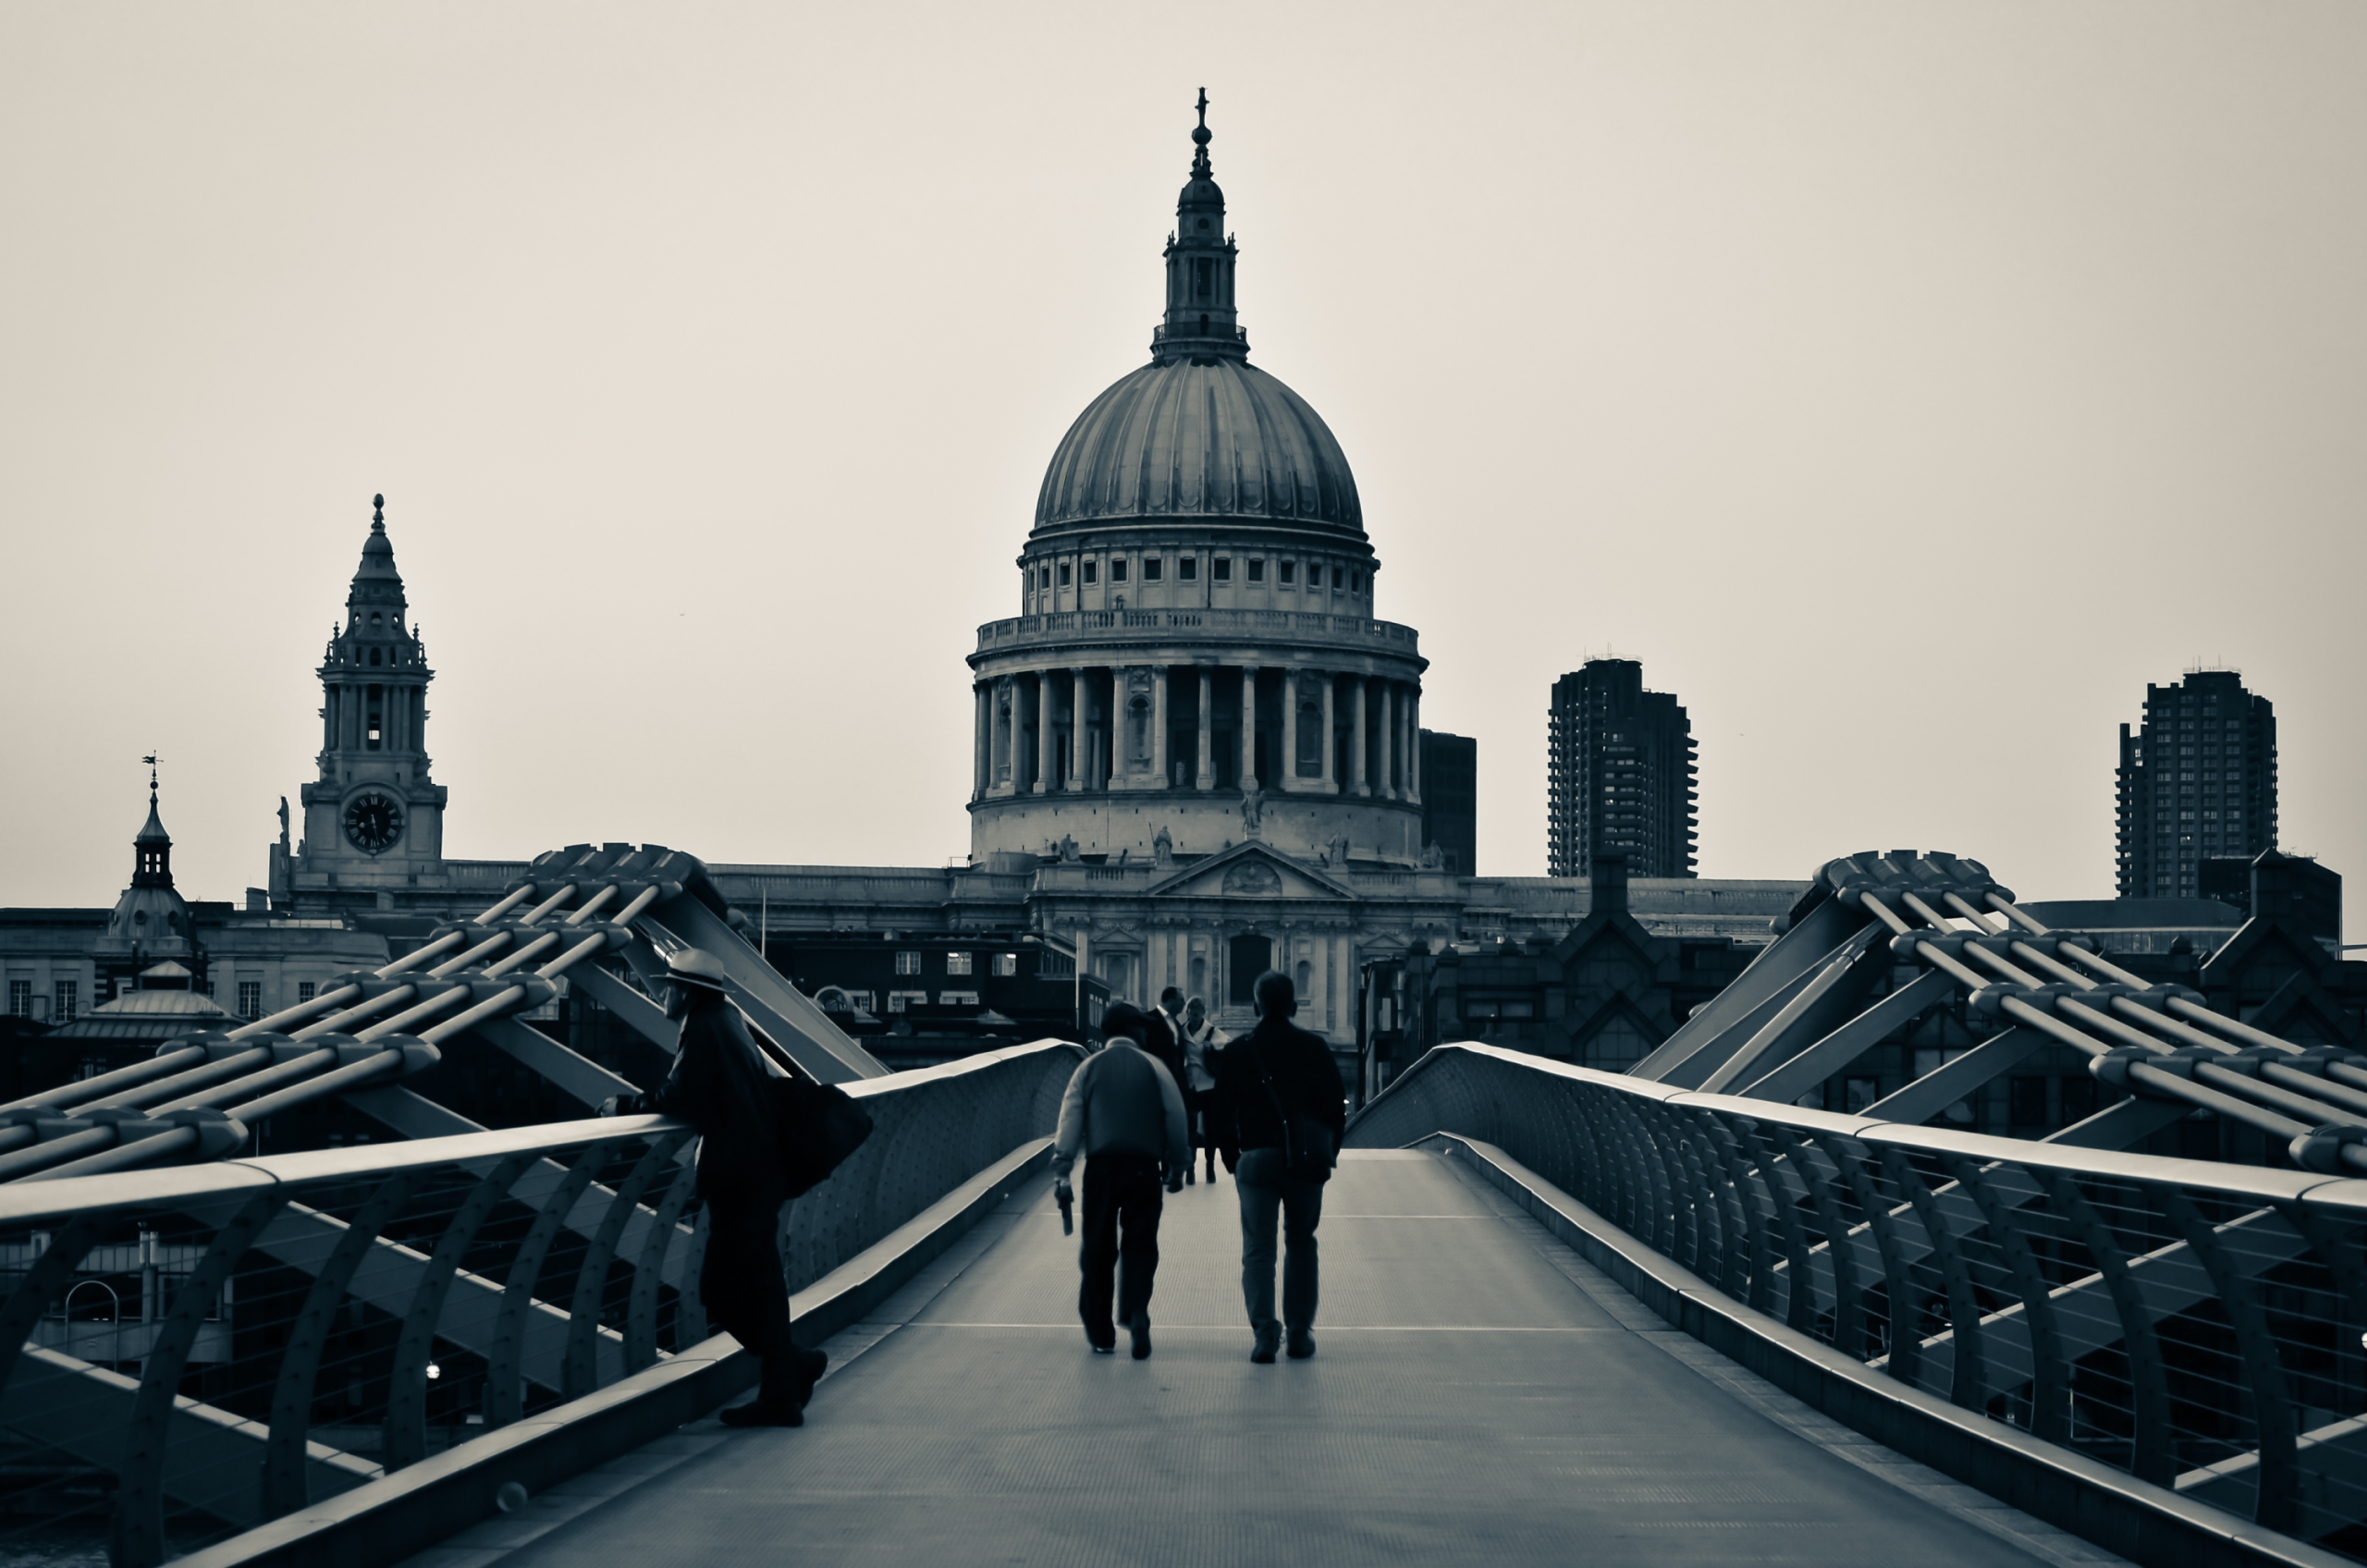 london, man made, millennium bridge, black & white, bridge, building, st paul's cathedral, bridges